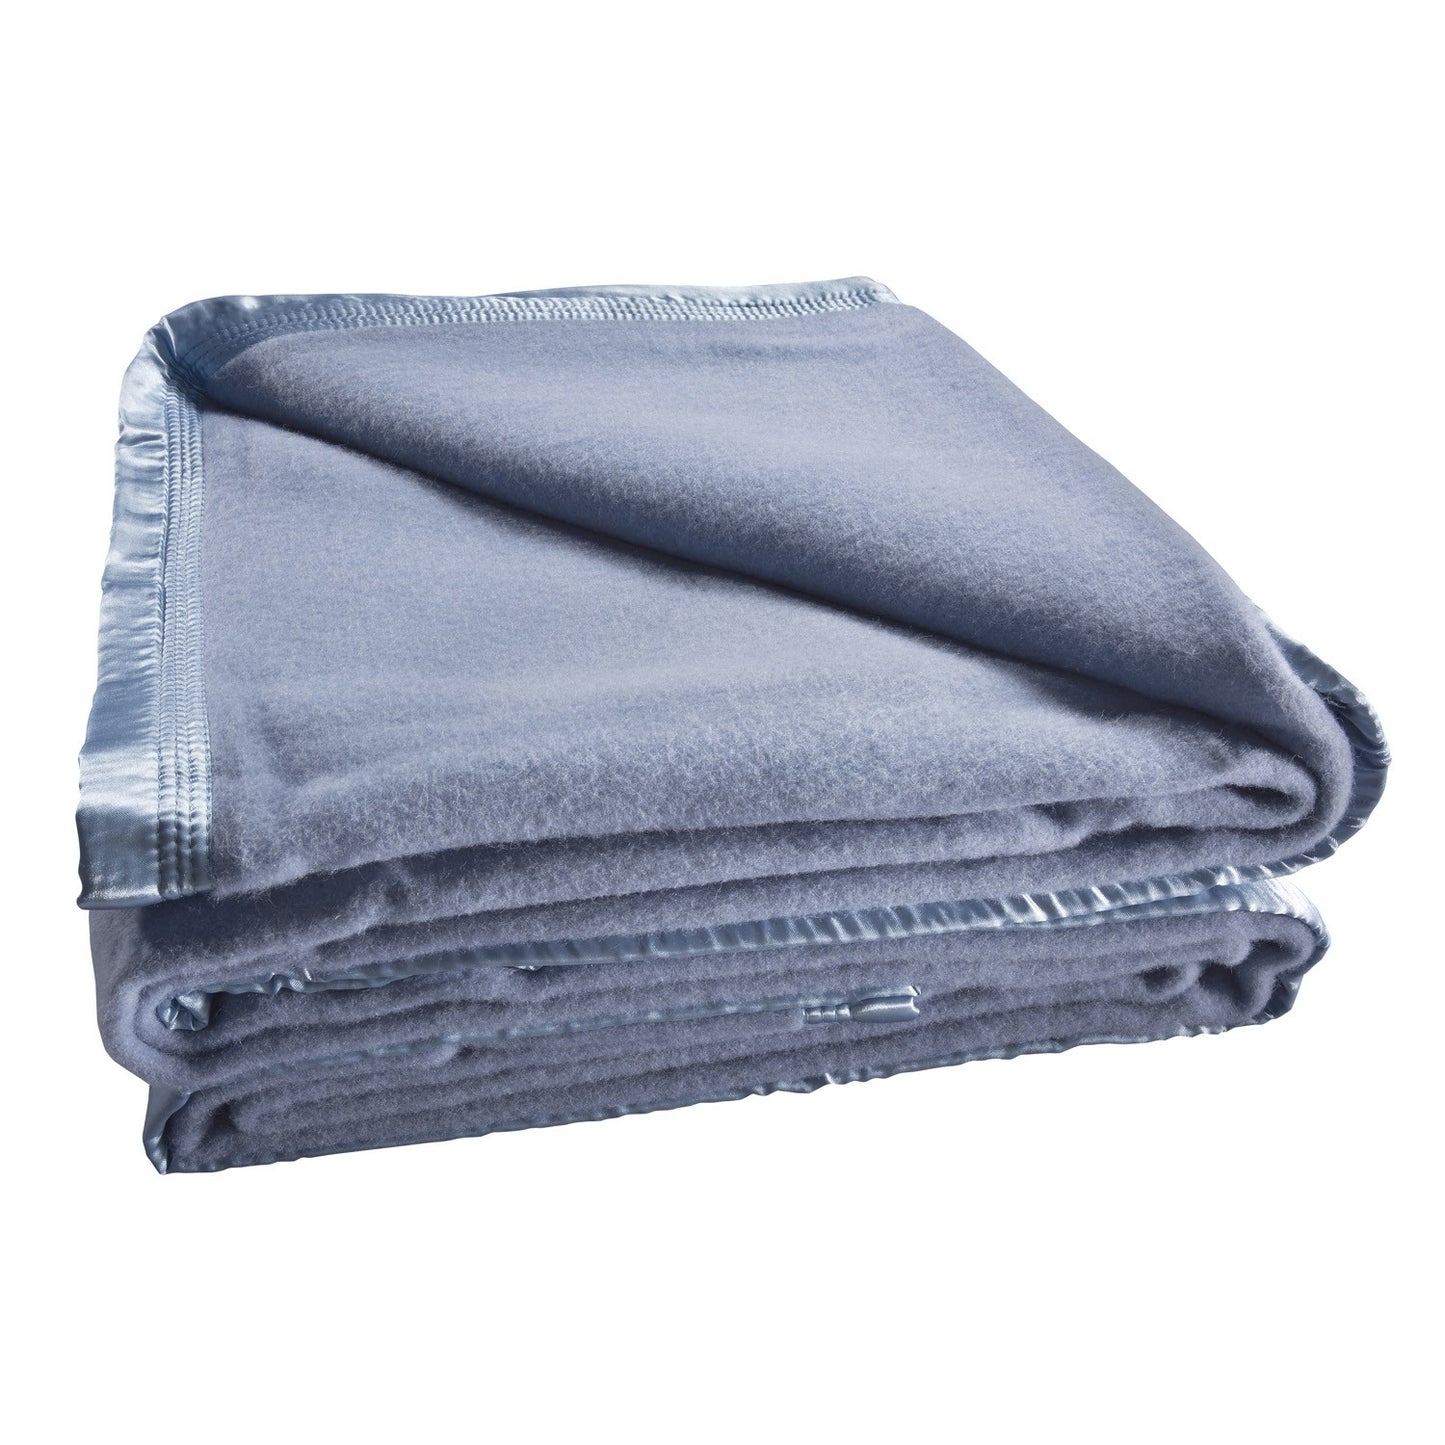 Australian Wool Blanket 480gsm Steel Blue by bianca